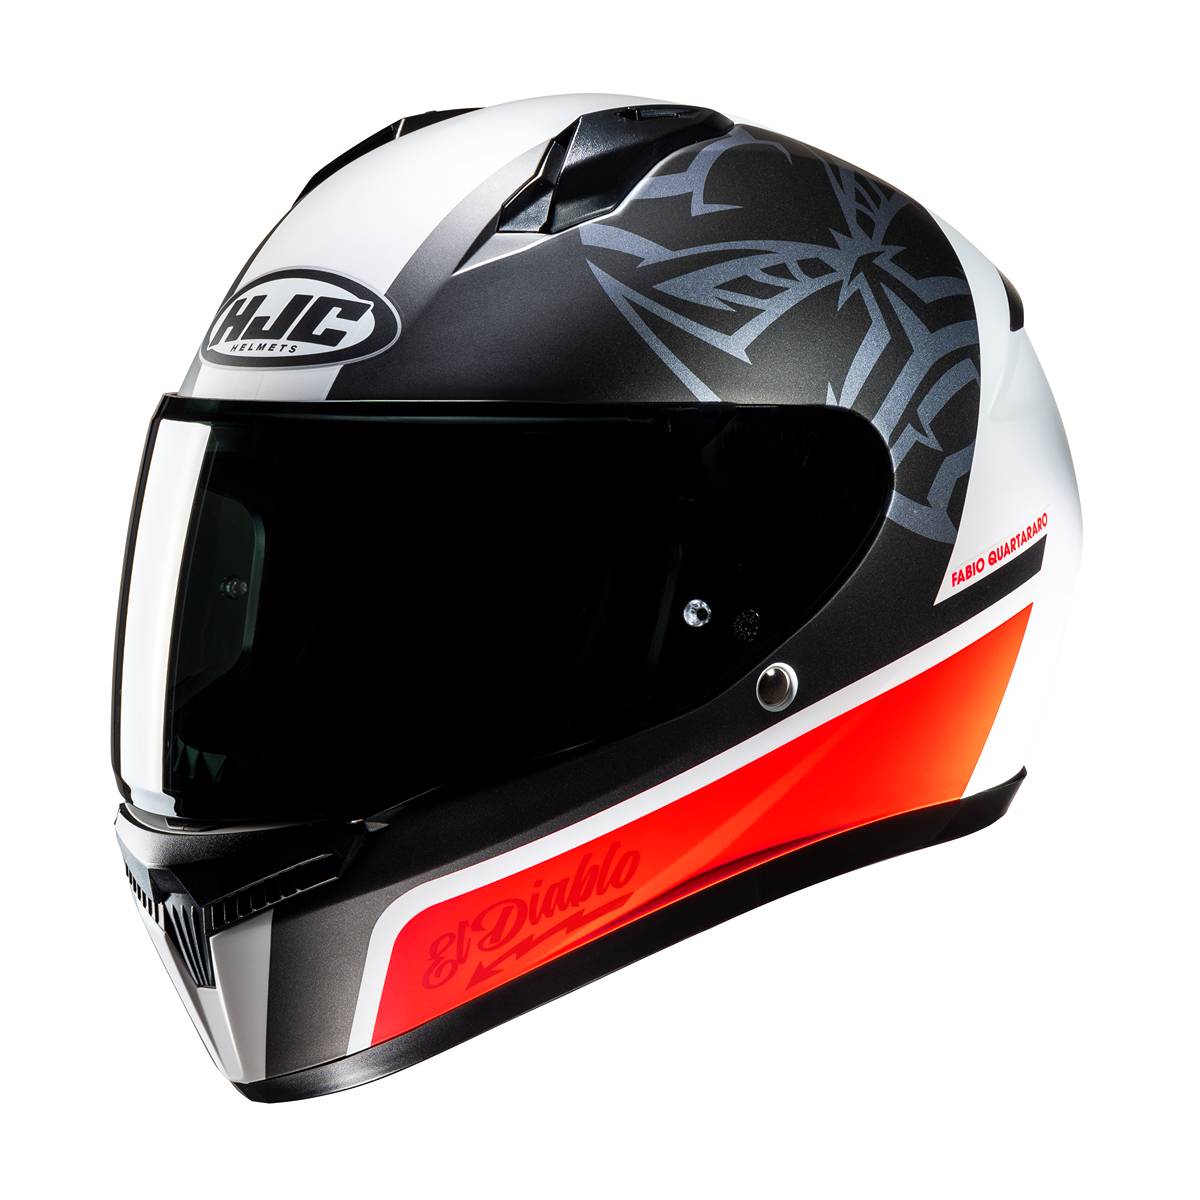 Image of EU HJC C10 Fabio Quartararo 20 Full Face Helmet White Red Taille S